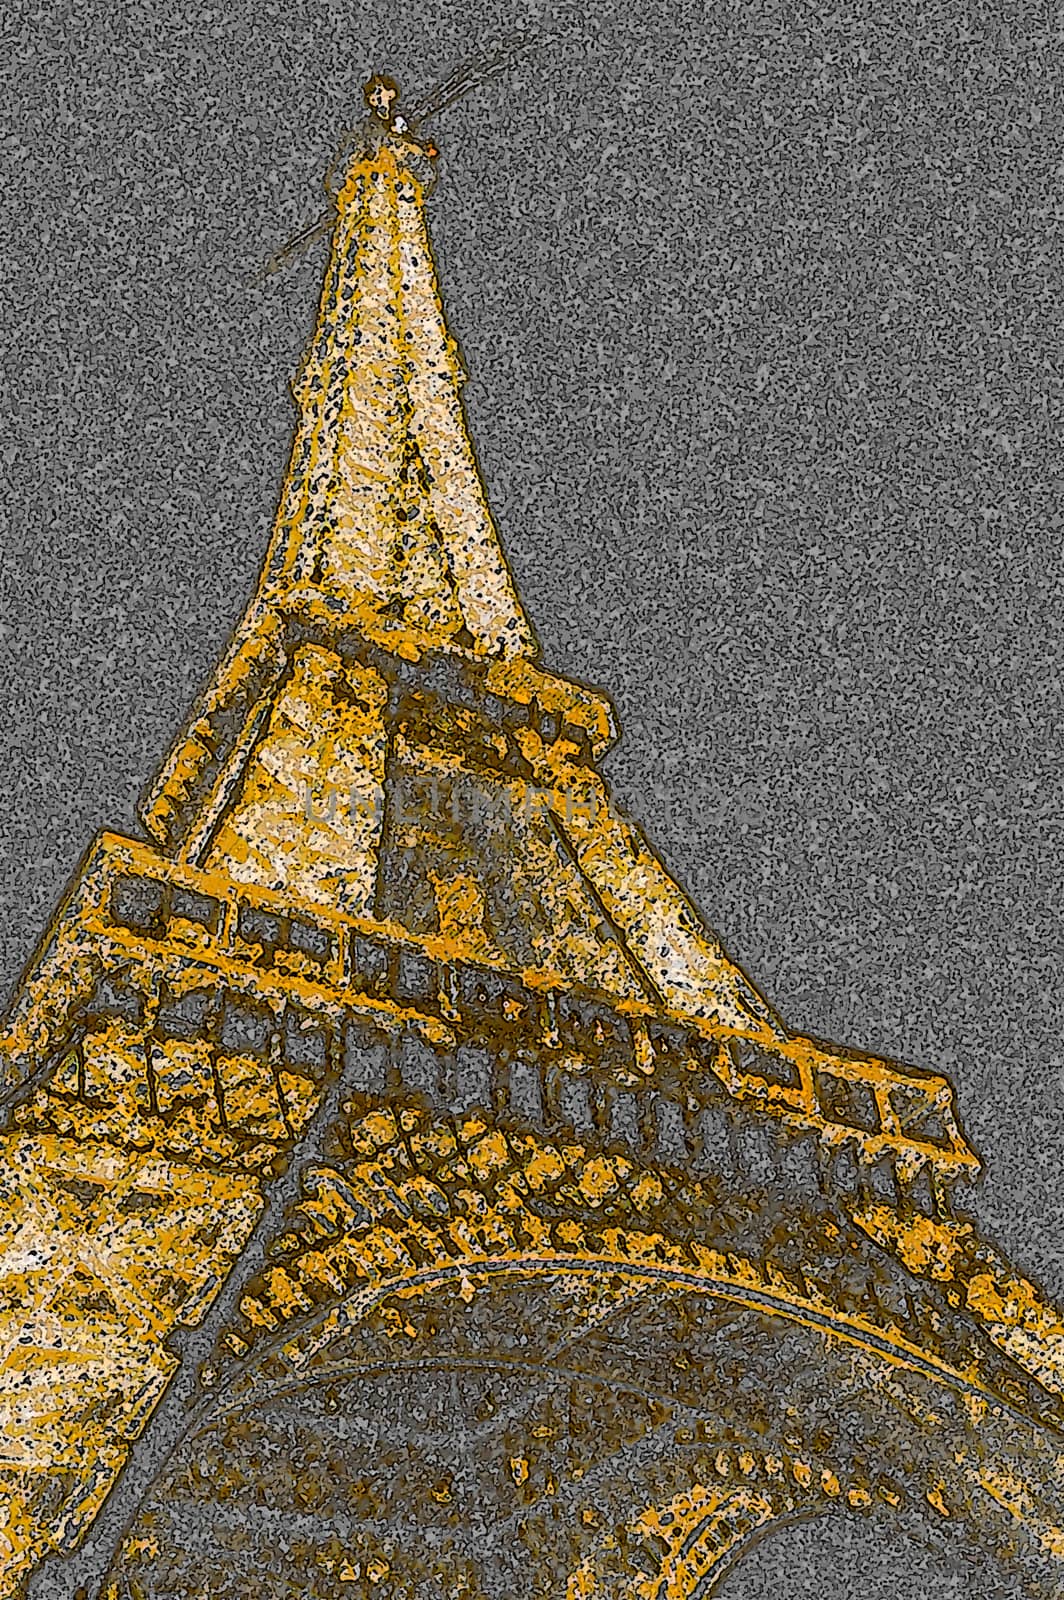 The Eiffel tower  by edella